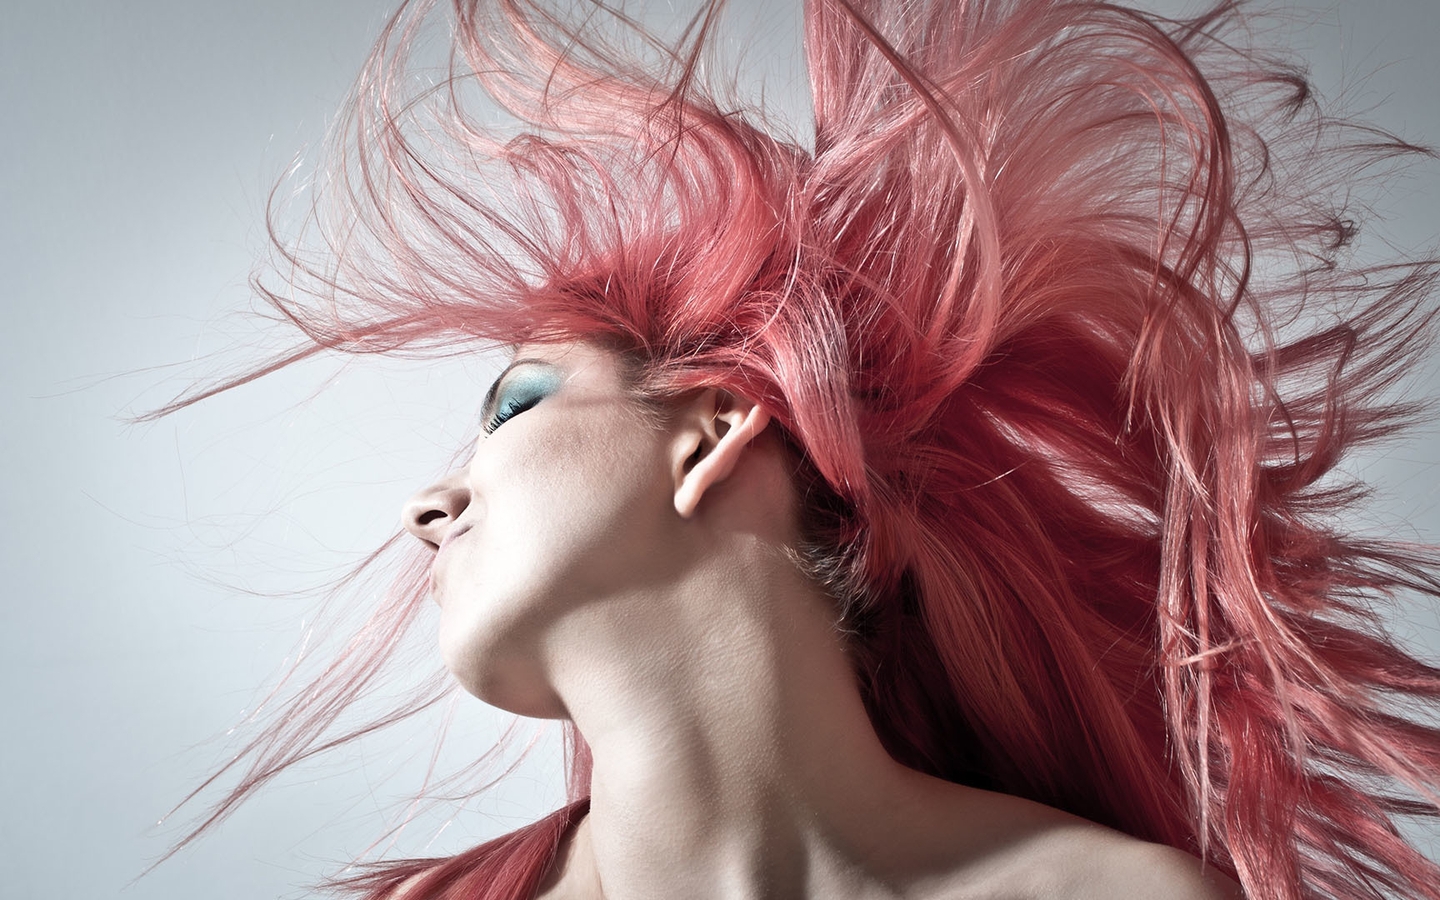 Картинка: Девушка, розовые волосы, кожа, шея, лицо, фон